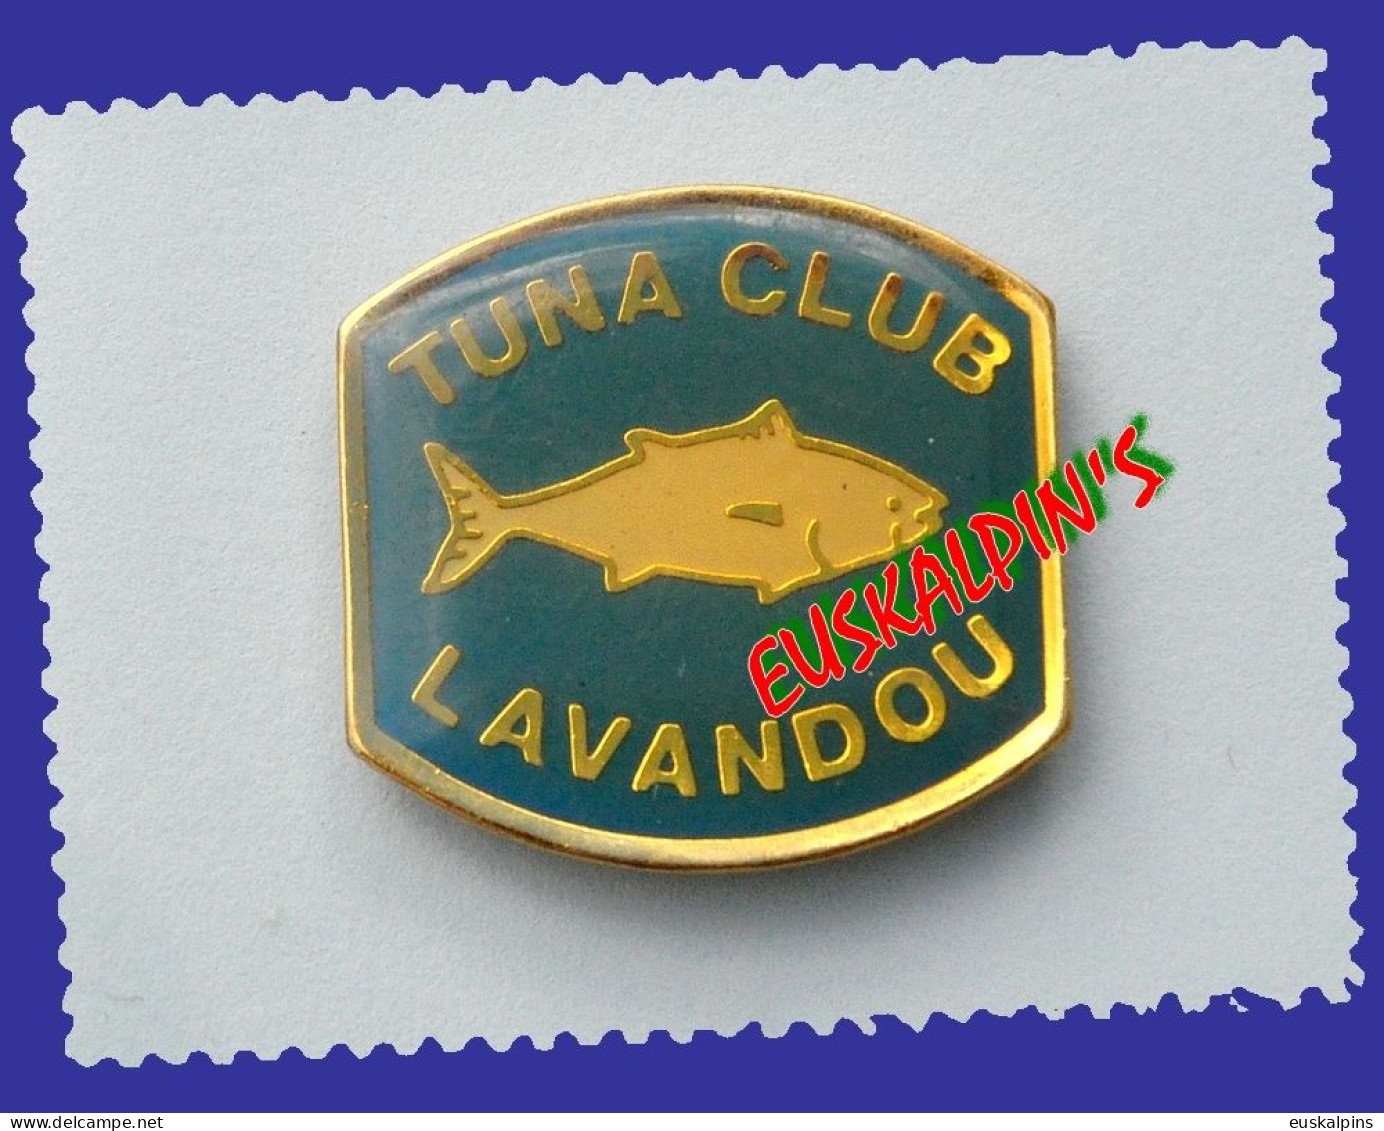 Pin's Pêche Au Gros, Tuna Club Du Lavandou, LE LAVANDOU, Var, Thon, Fish, Poisson - Tiere